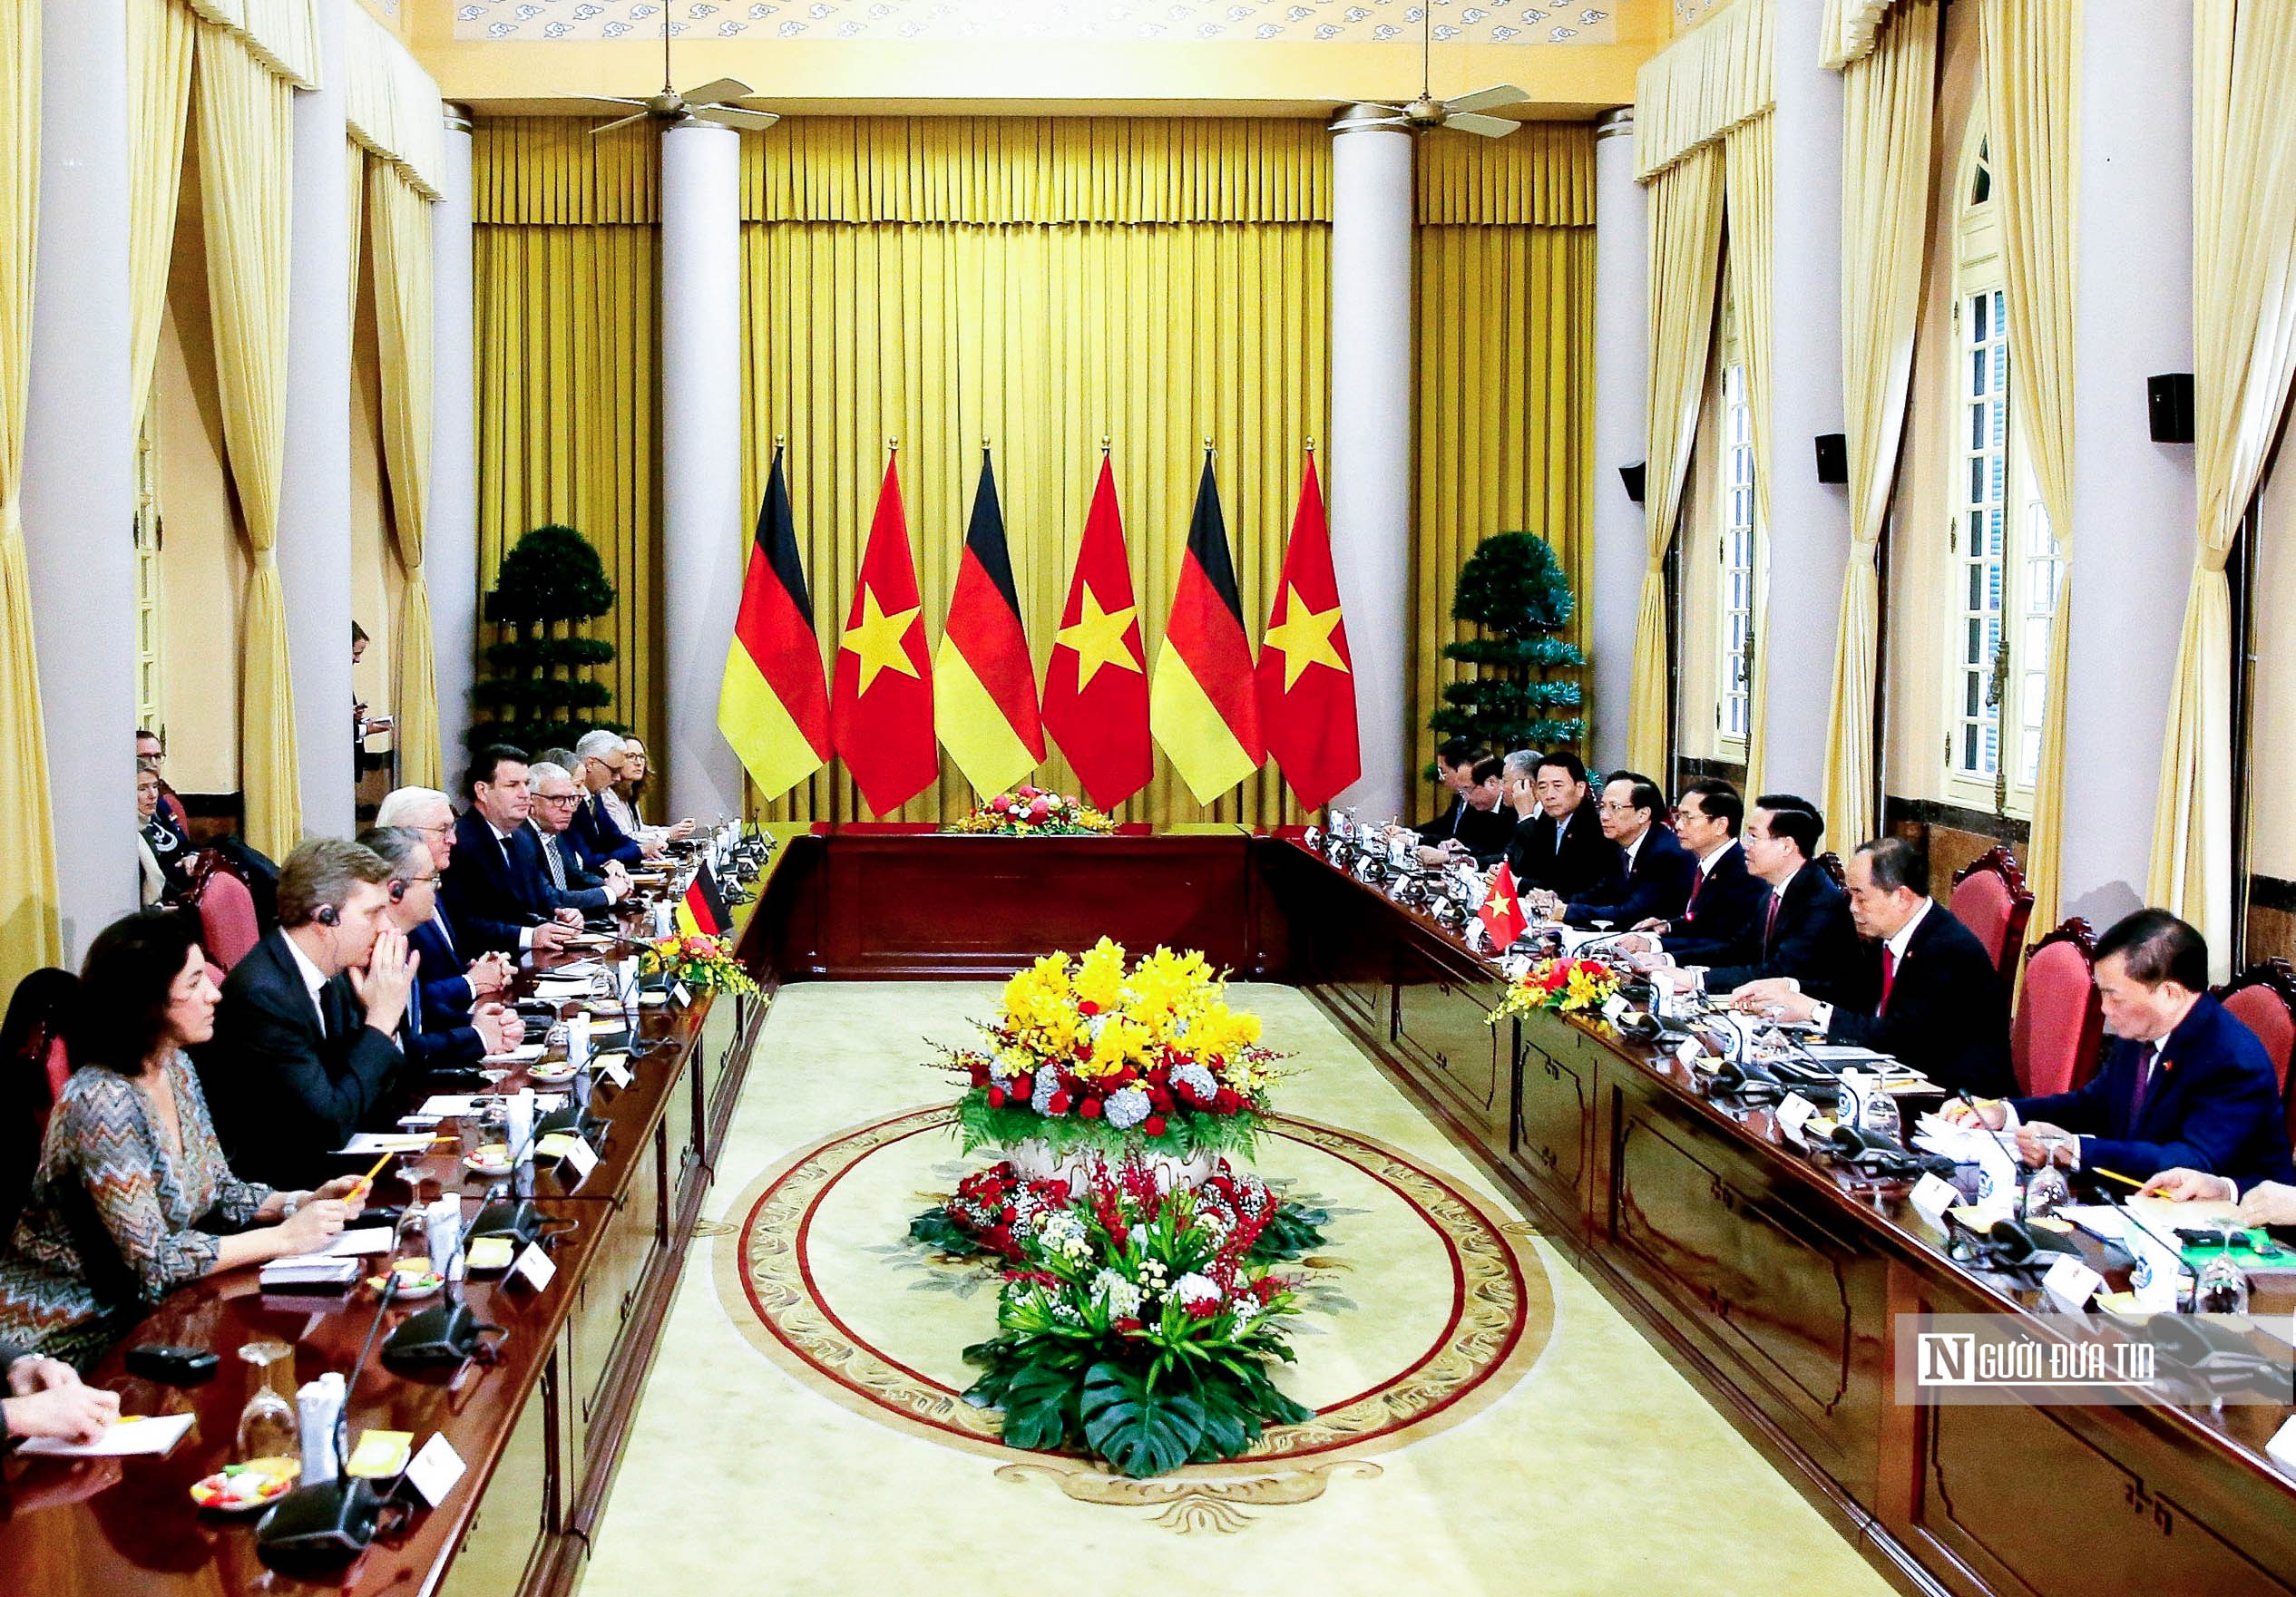 Tiêu điểm - Bắn 21 phát đại bác chào mừng Tổng thống Đức tới thăm Việt Nam (Hình 18).